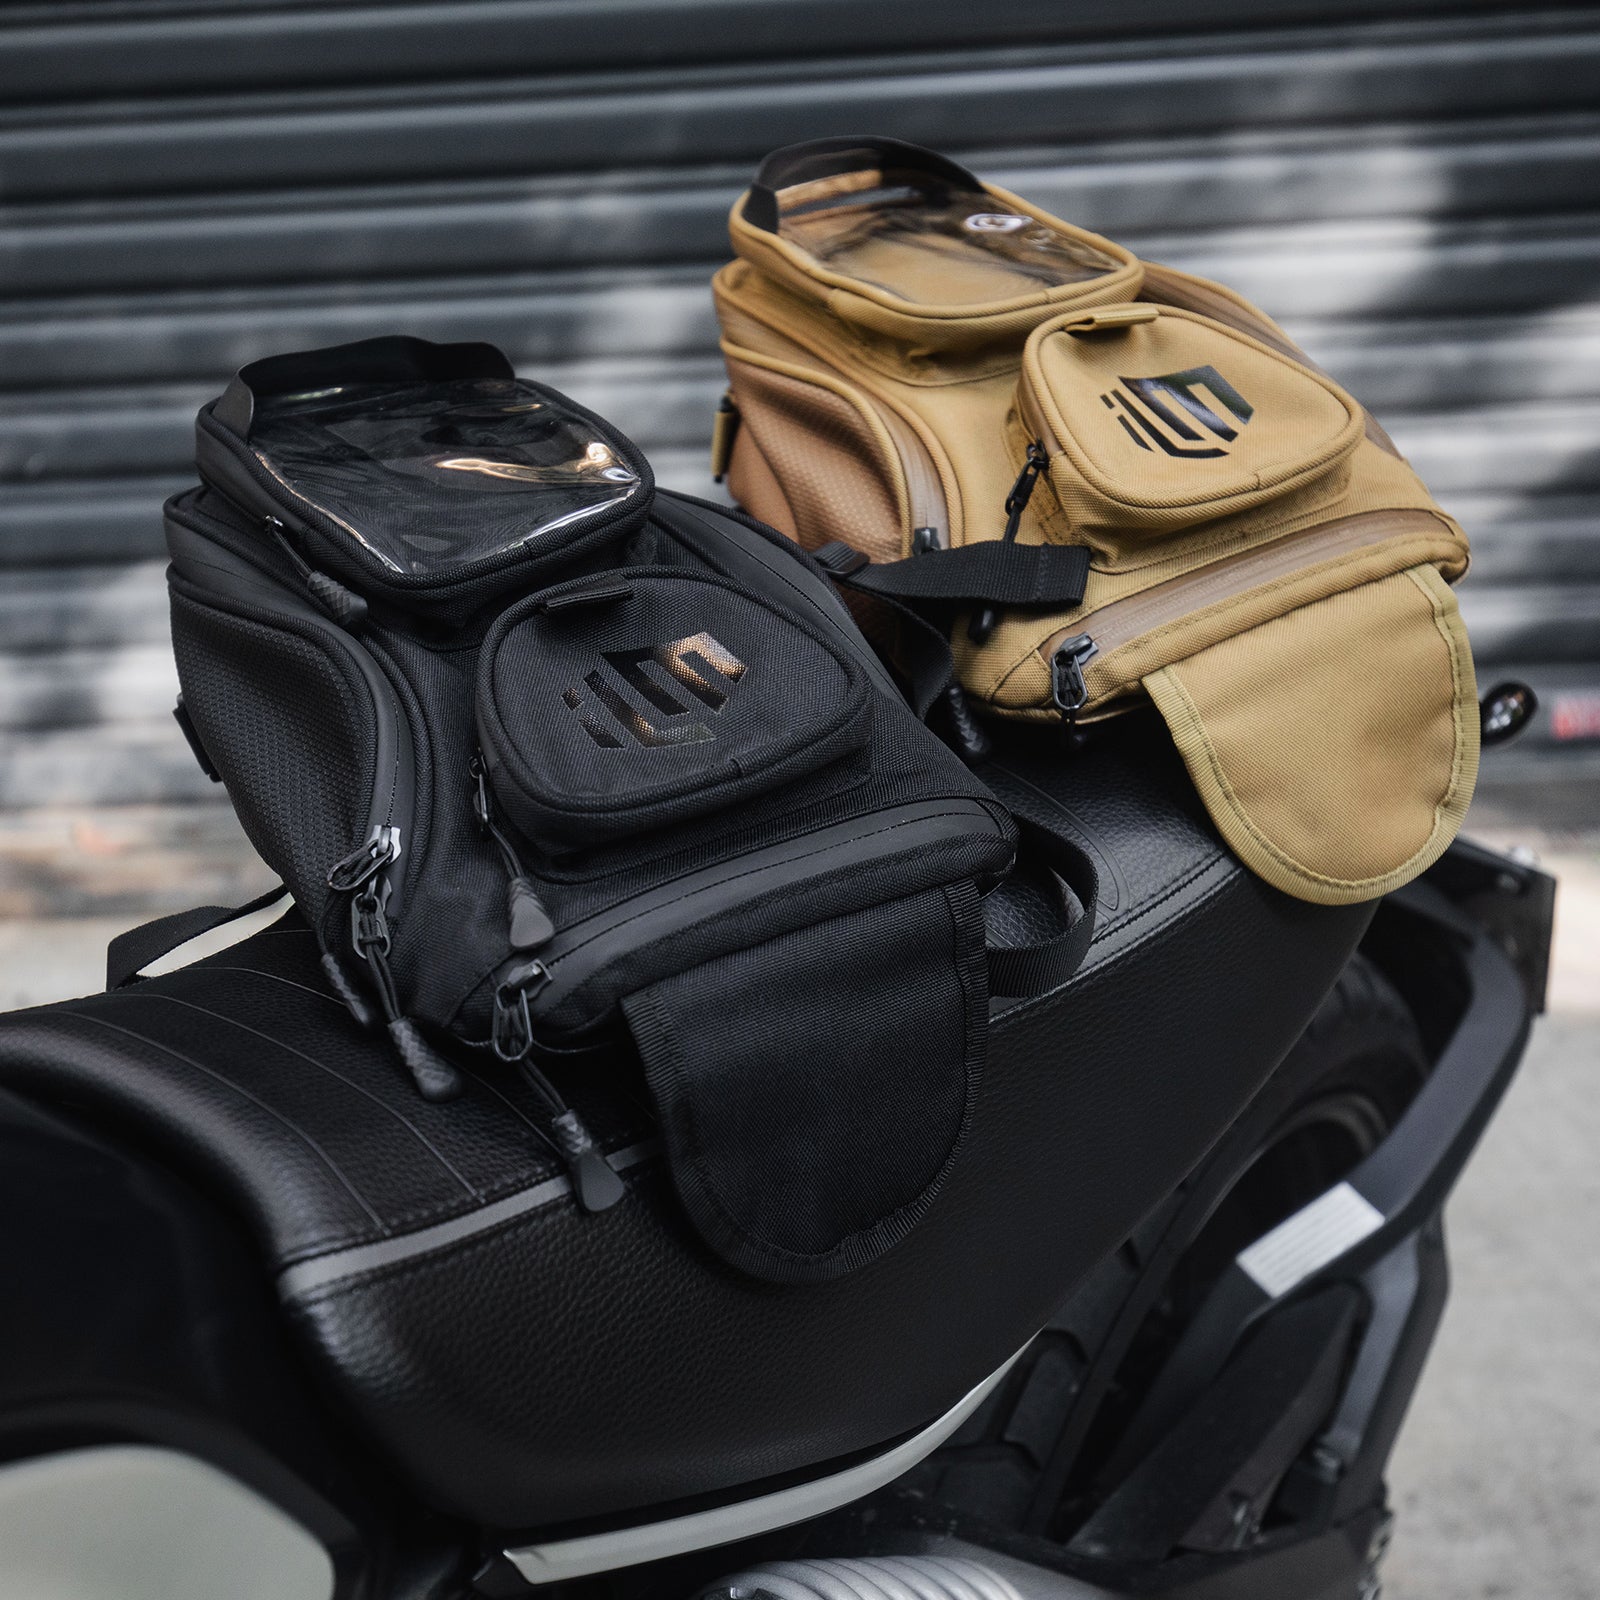 ILM Motorcycle Tank Bag Waterproof Motorbike Bag